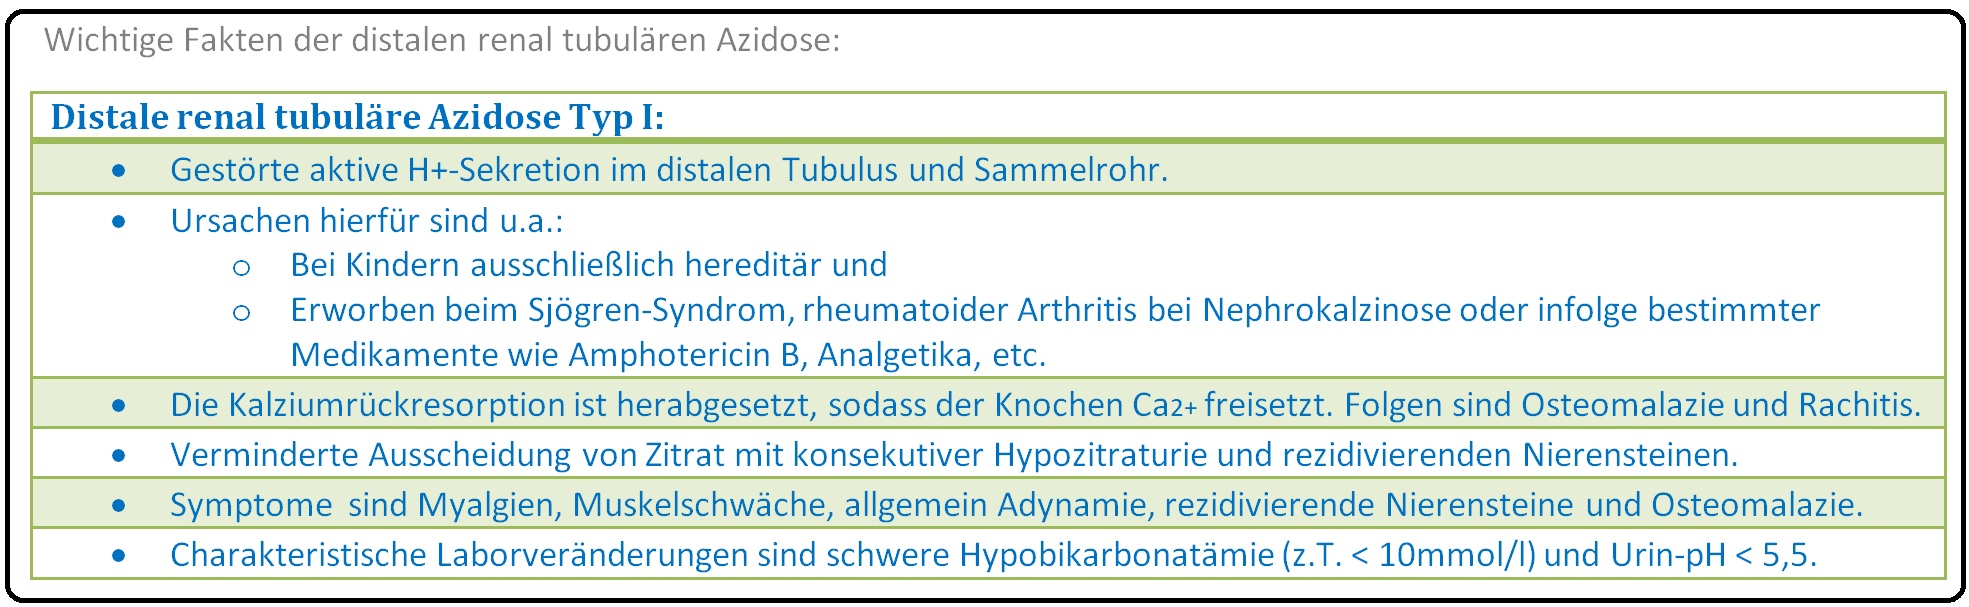 643 Wichtige Fakten der distalen renal tubulären Azidose